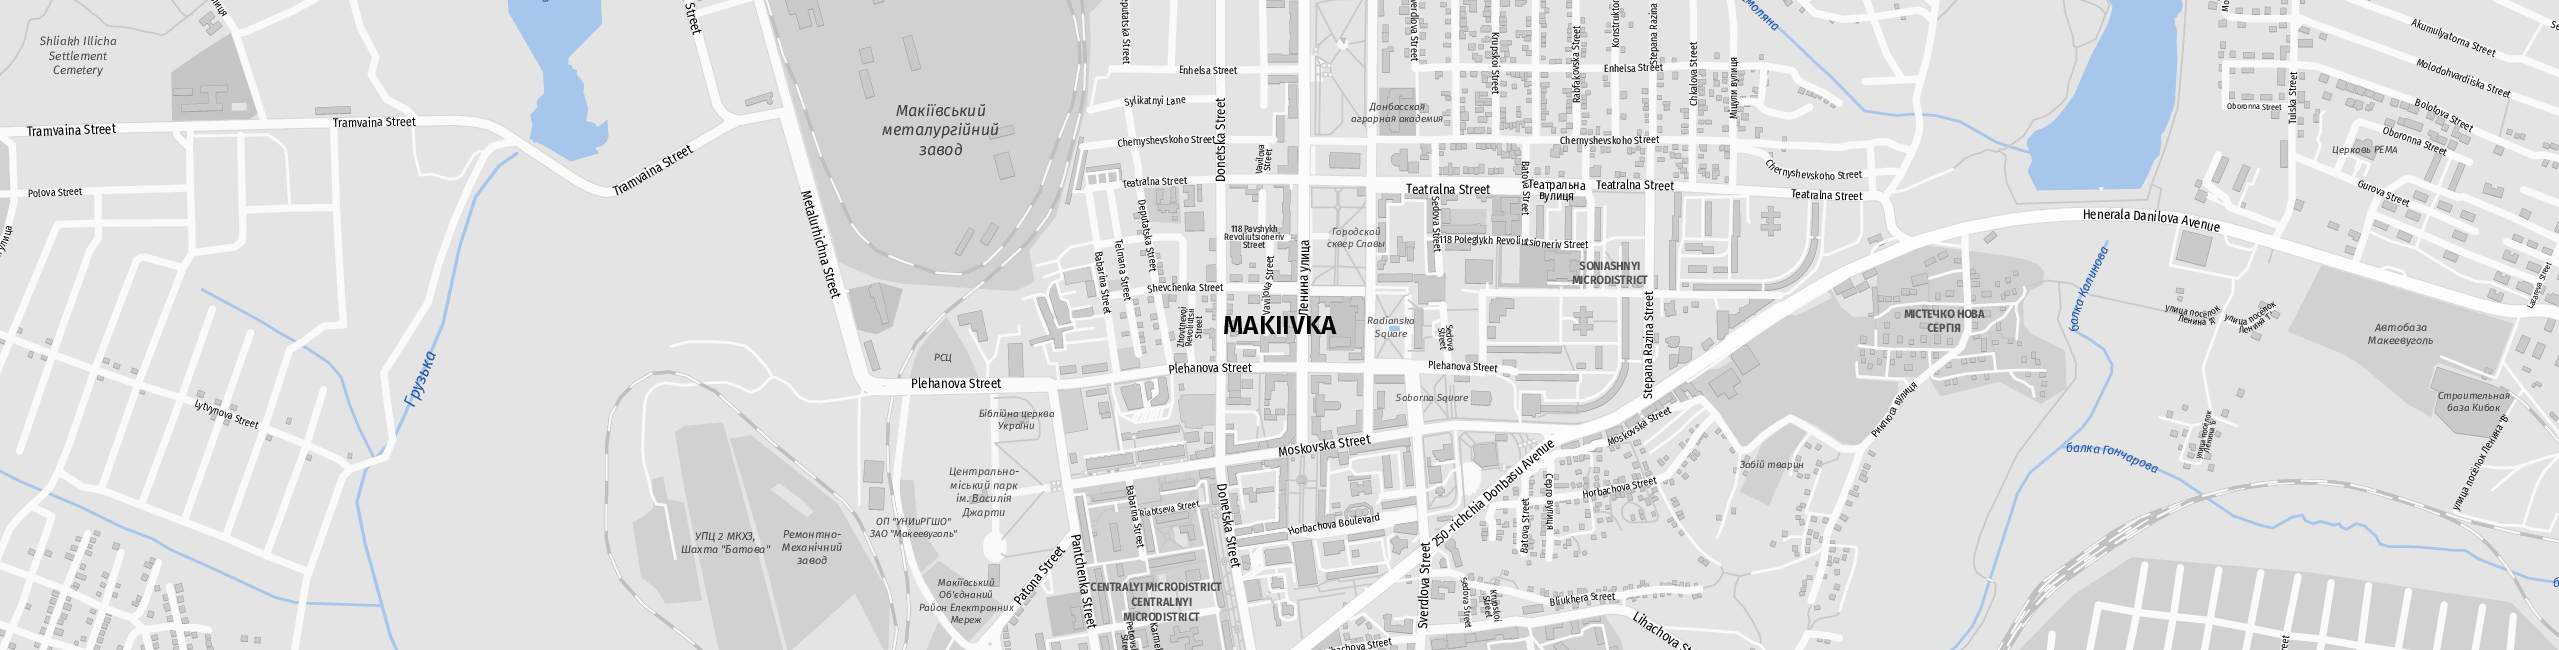 Stadtplan Makijiwka zum Downloaden.